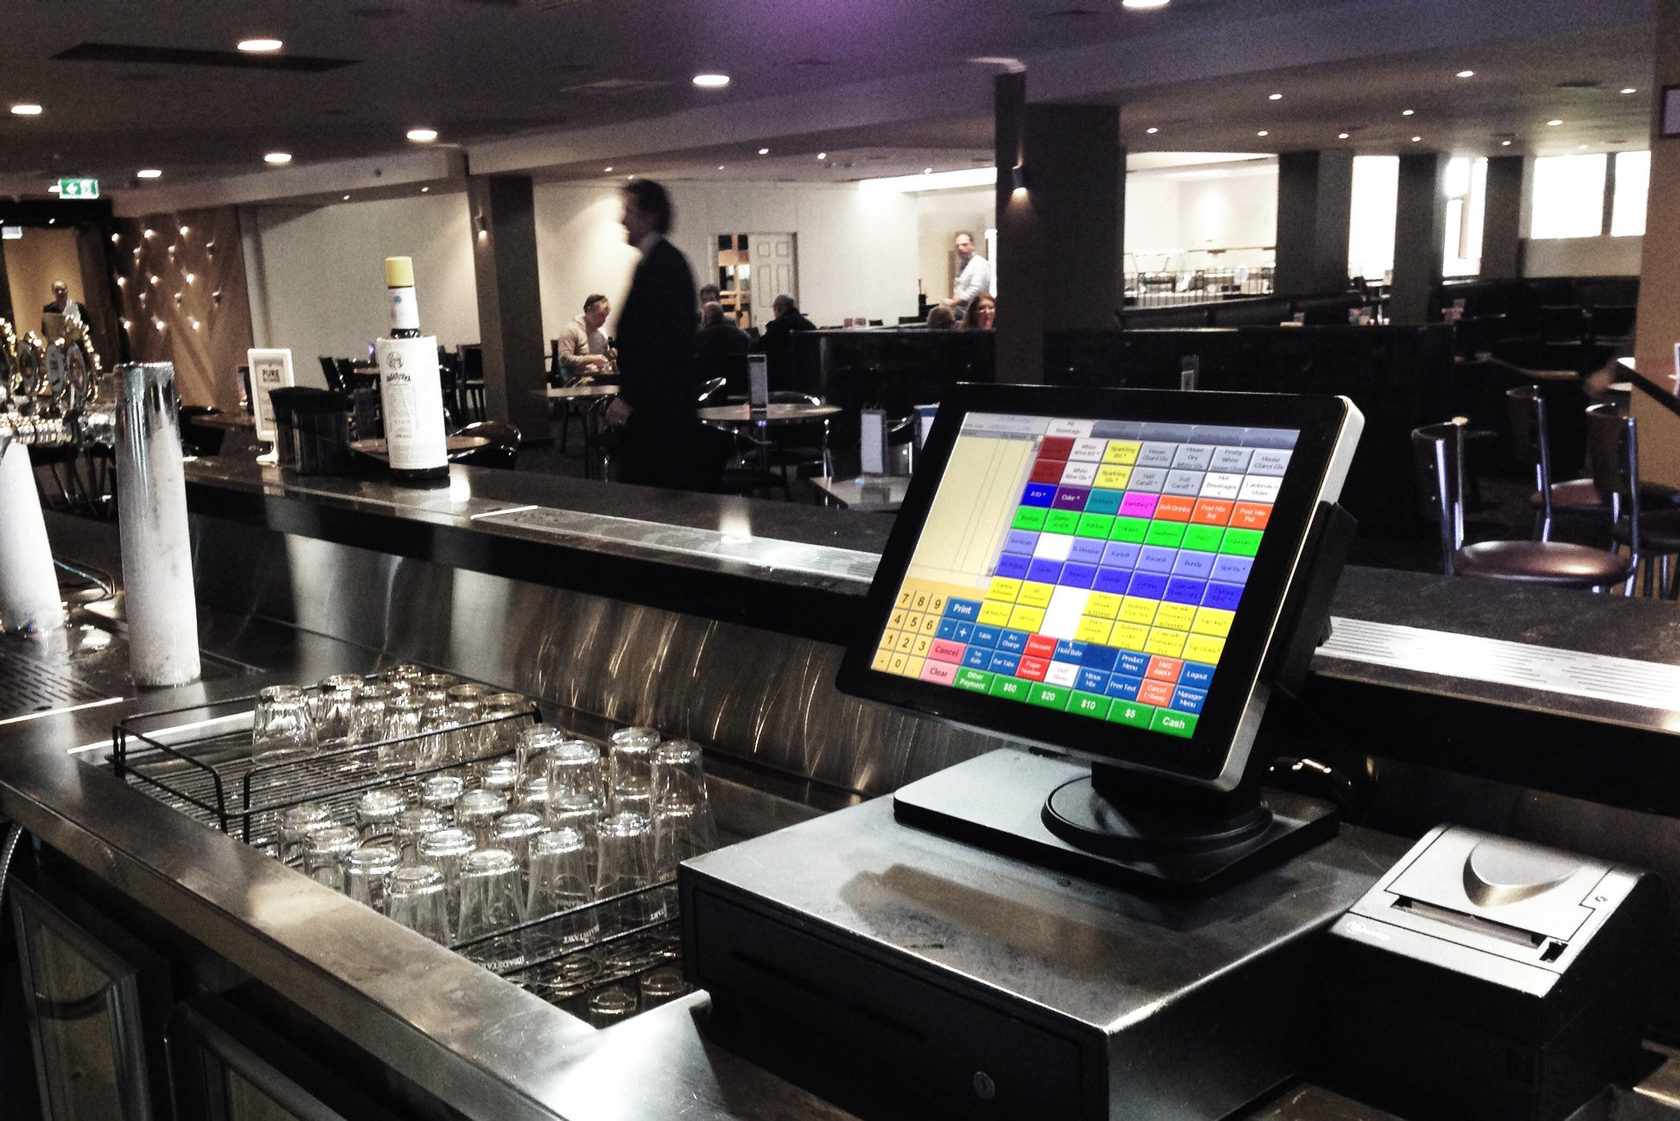 ייעול התפעול: יתרונות מערכות קופה מסחריות בבתי קפה ומסעדות